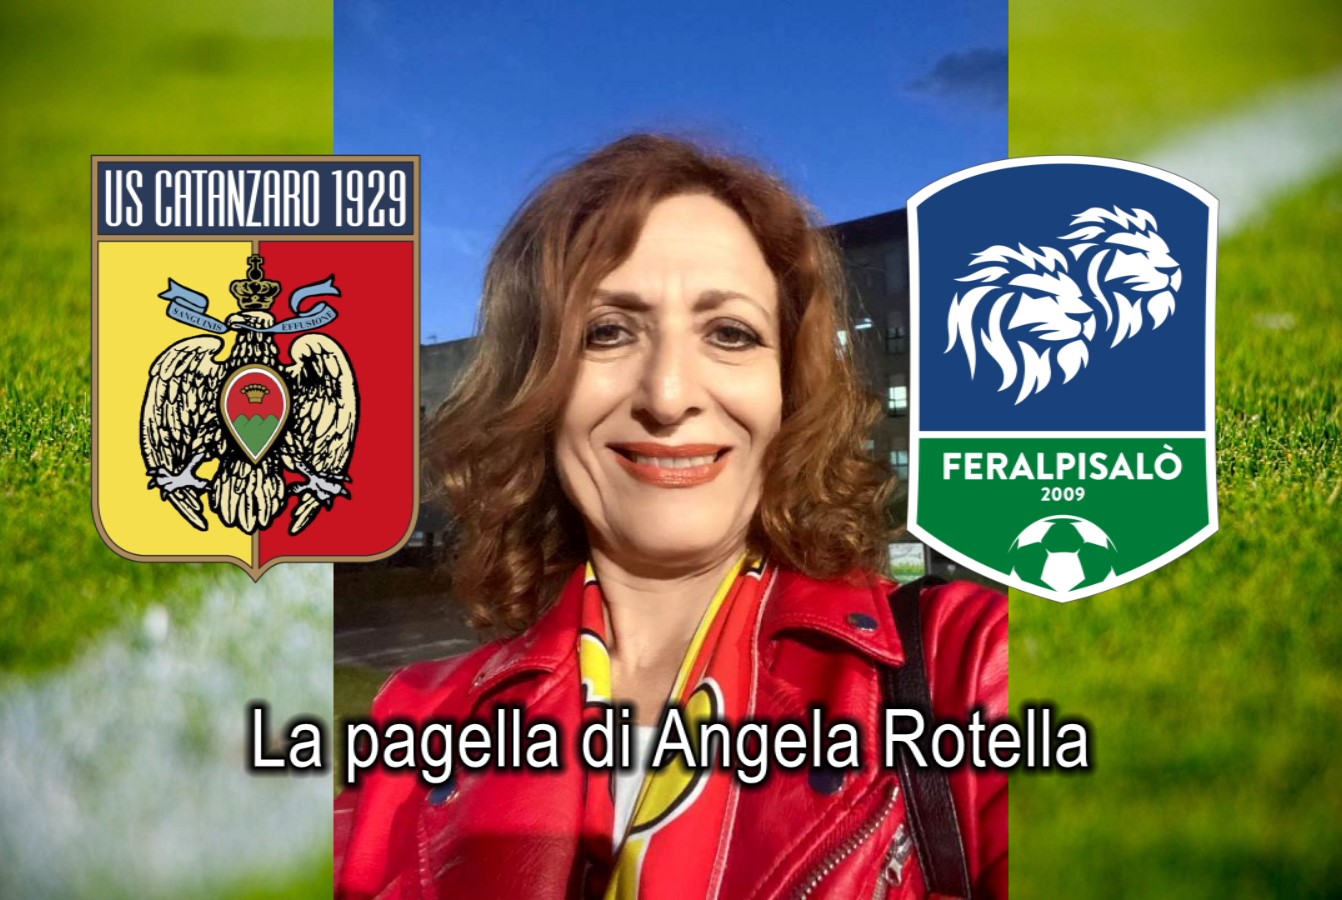 Catanzaro, Reggiana, Feralpisalò: Um pouco sobre os três times que  celebraram o acesso na Serie C da Itália